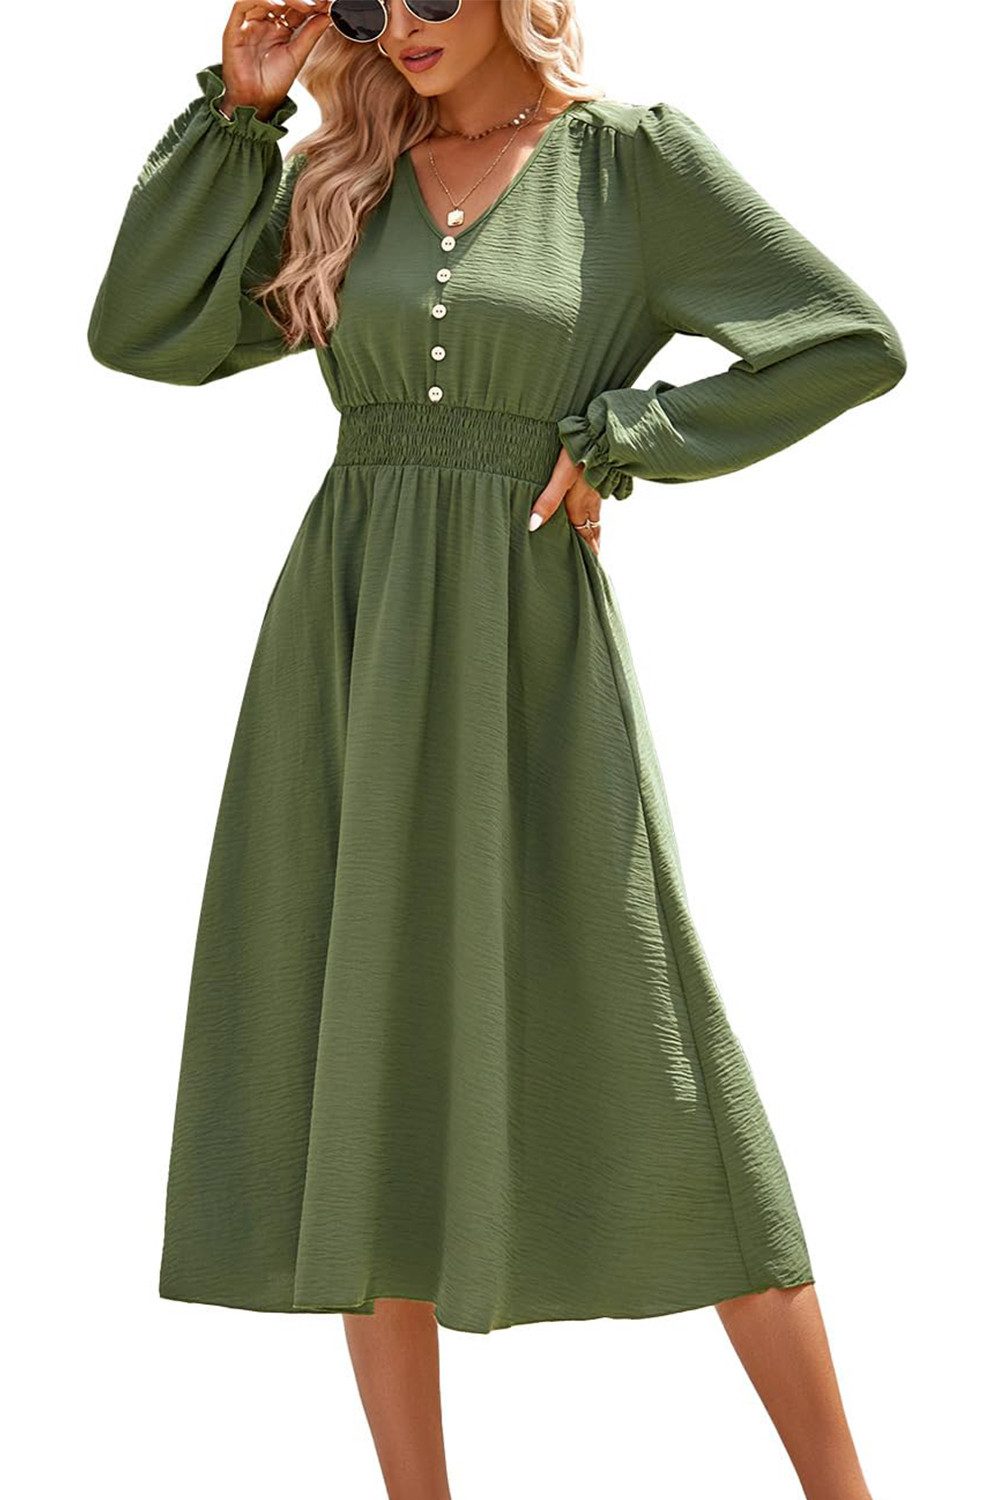 B.X Dirndl Revers-Hemdkleid für Damen Langarm-V-Ausschnitt, elastische kleid Damen-Midikleid mit V-Ausschnitt lange Laternenärmel Partykleid